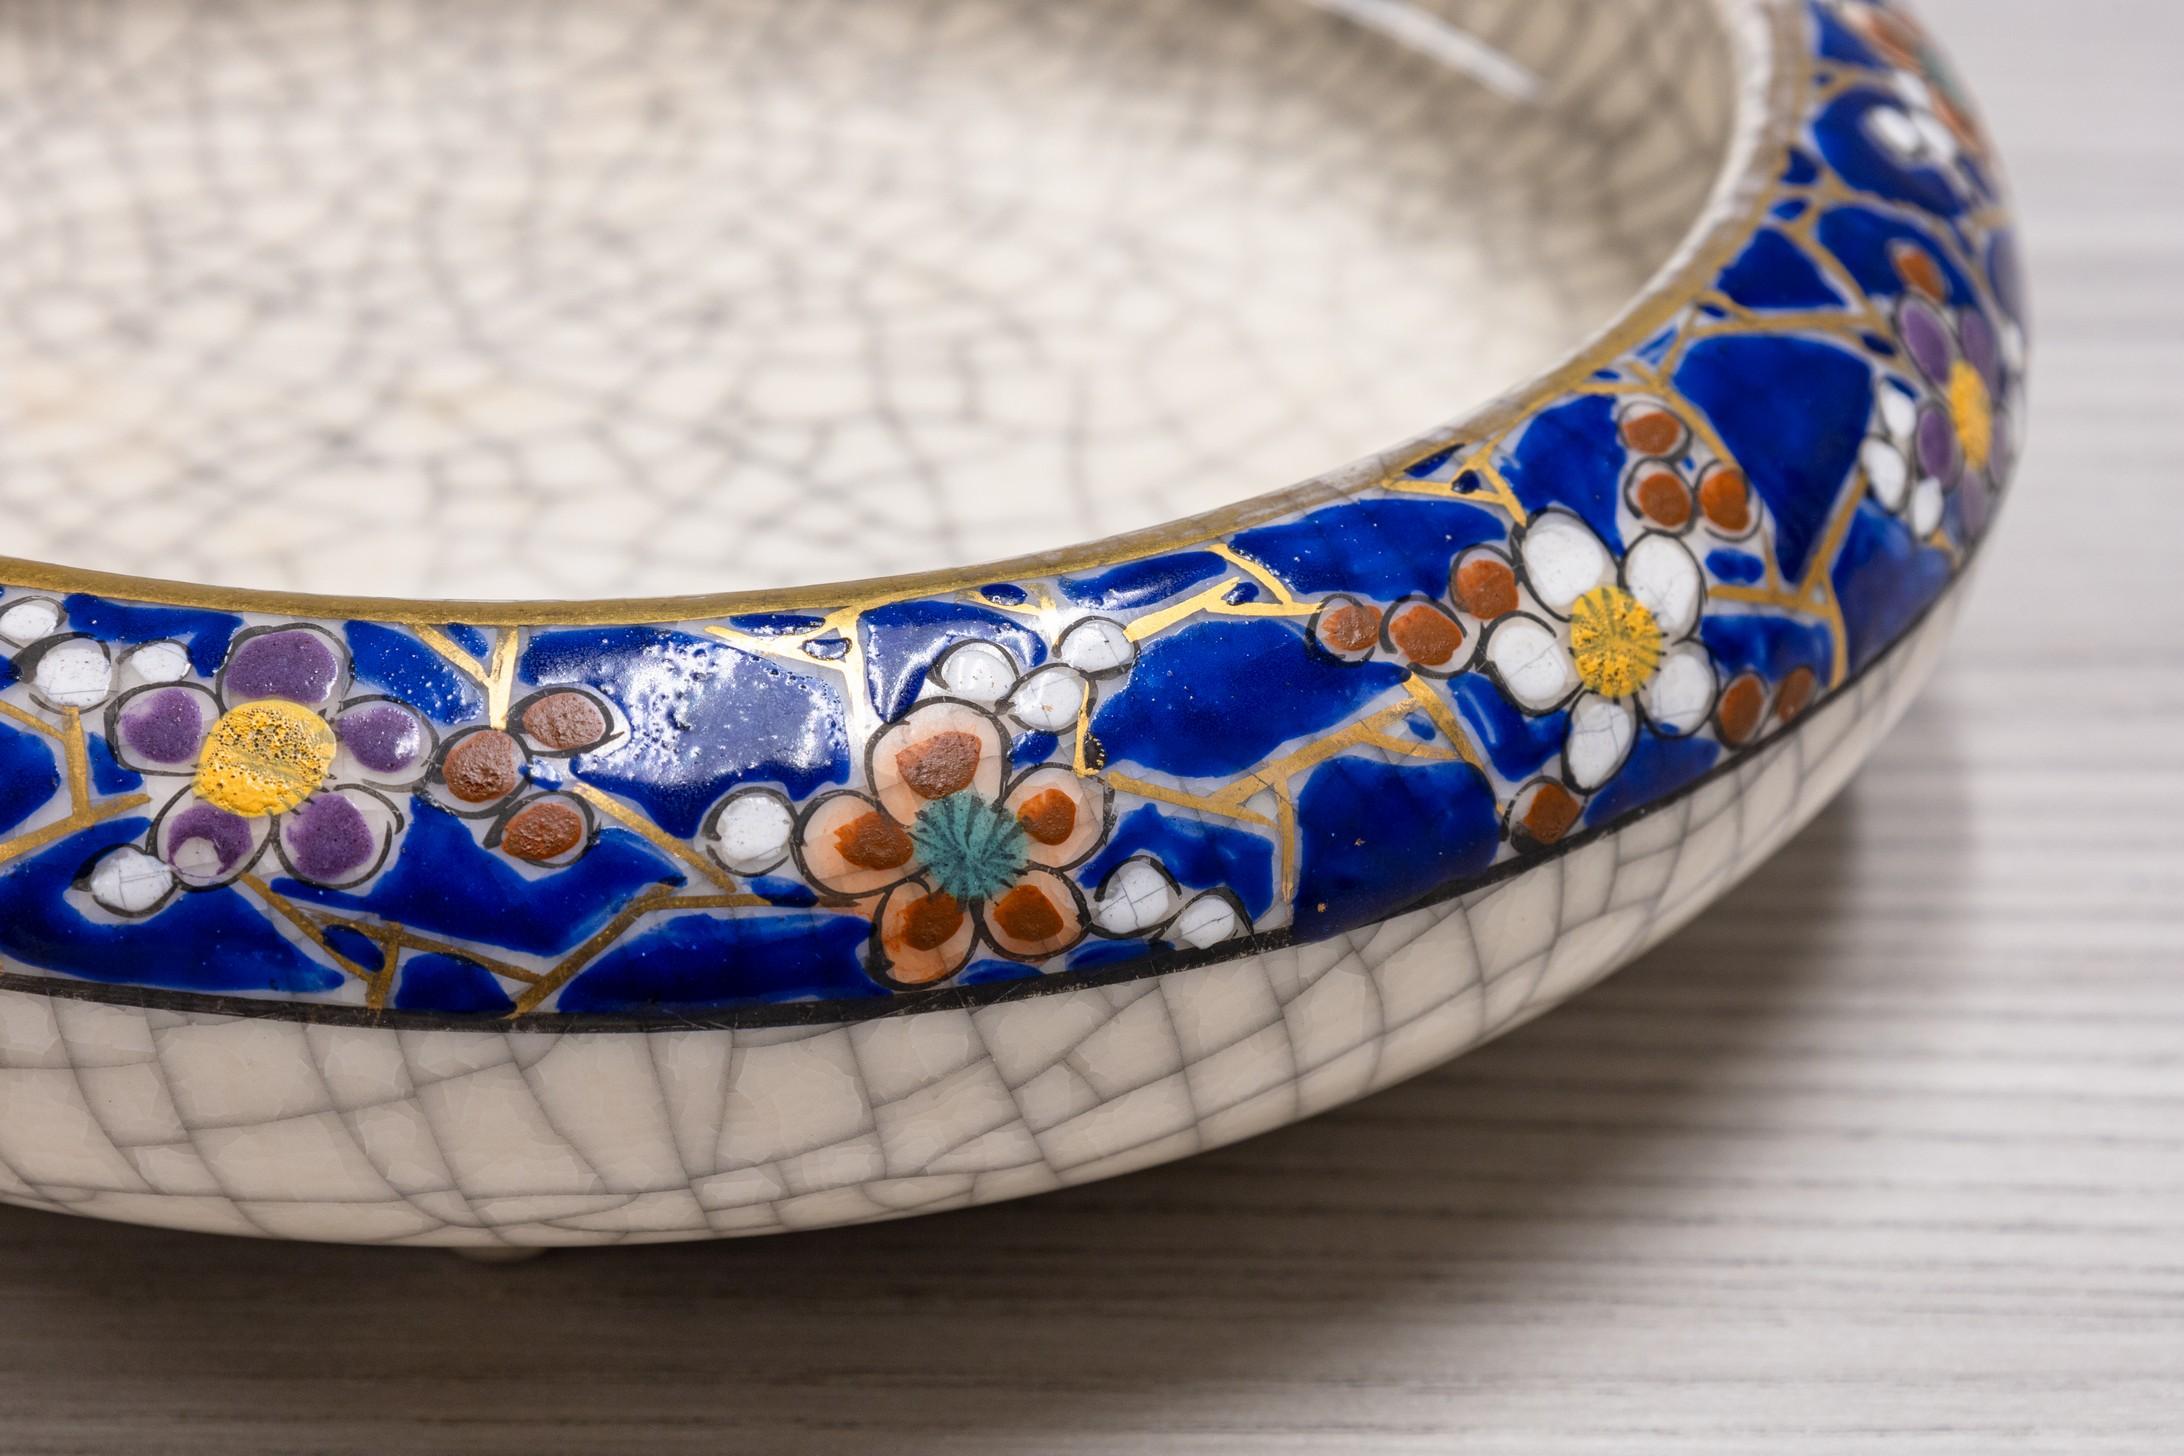 Diese antike Satsuma-Schale zeichnet sich durch ihre reiche kobaltblaue Glasur aus, die mit verschlungenen goldenen und mehrfarbigen Blumenmotiven verziert ist. Das Innere der Schale ist mit einer zarten Craquelé-Glasur versehen, die die